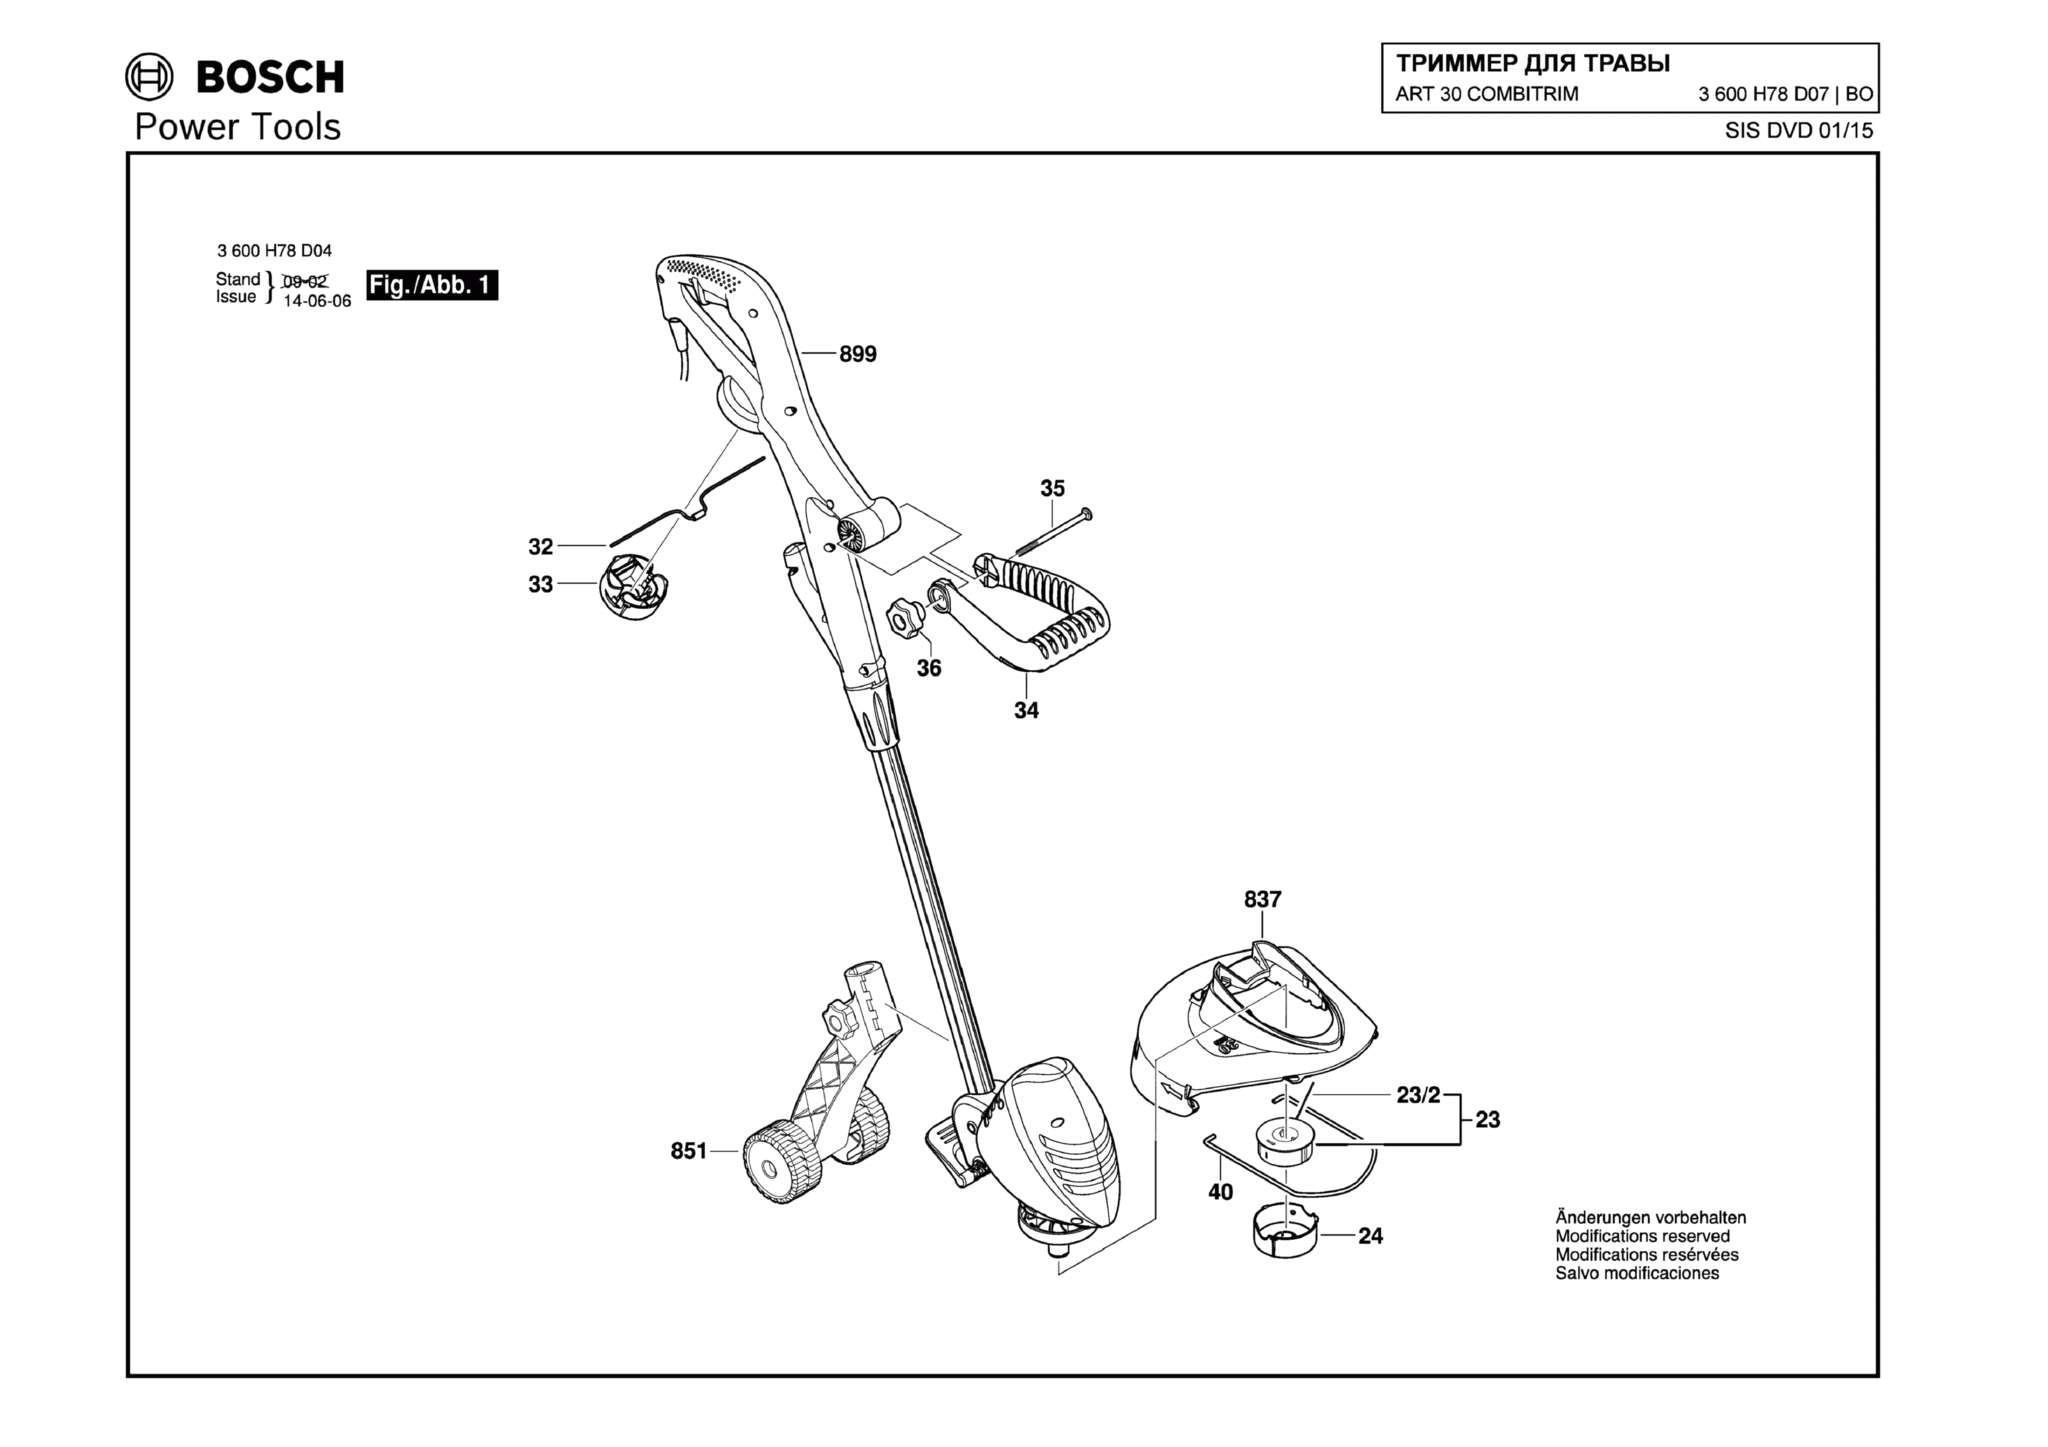 Запчасти, схема и деталировка Bosch ART 30 COMBITRIM (ТИП 3600H78D07)